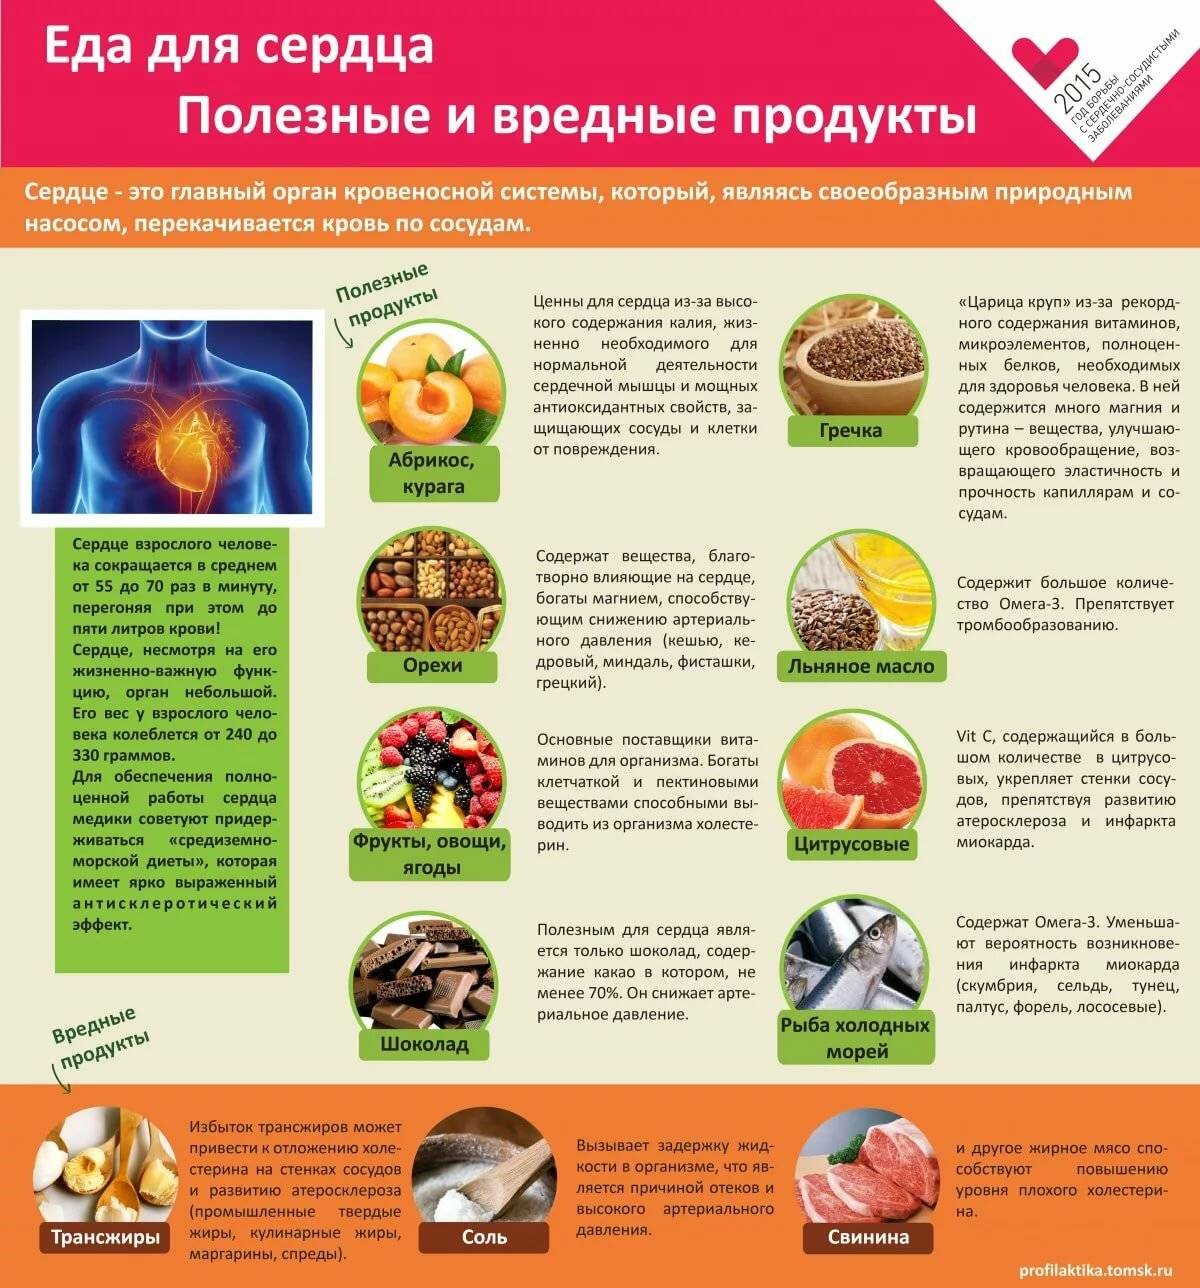 Еда для сердца – 15 лучших продуктов для защиты от сердечных заболеваний